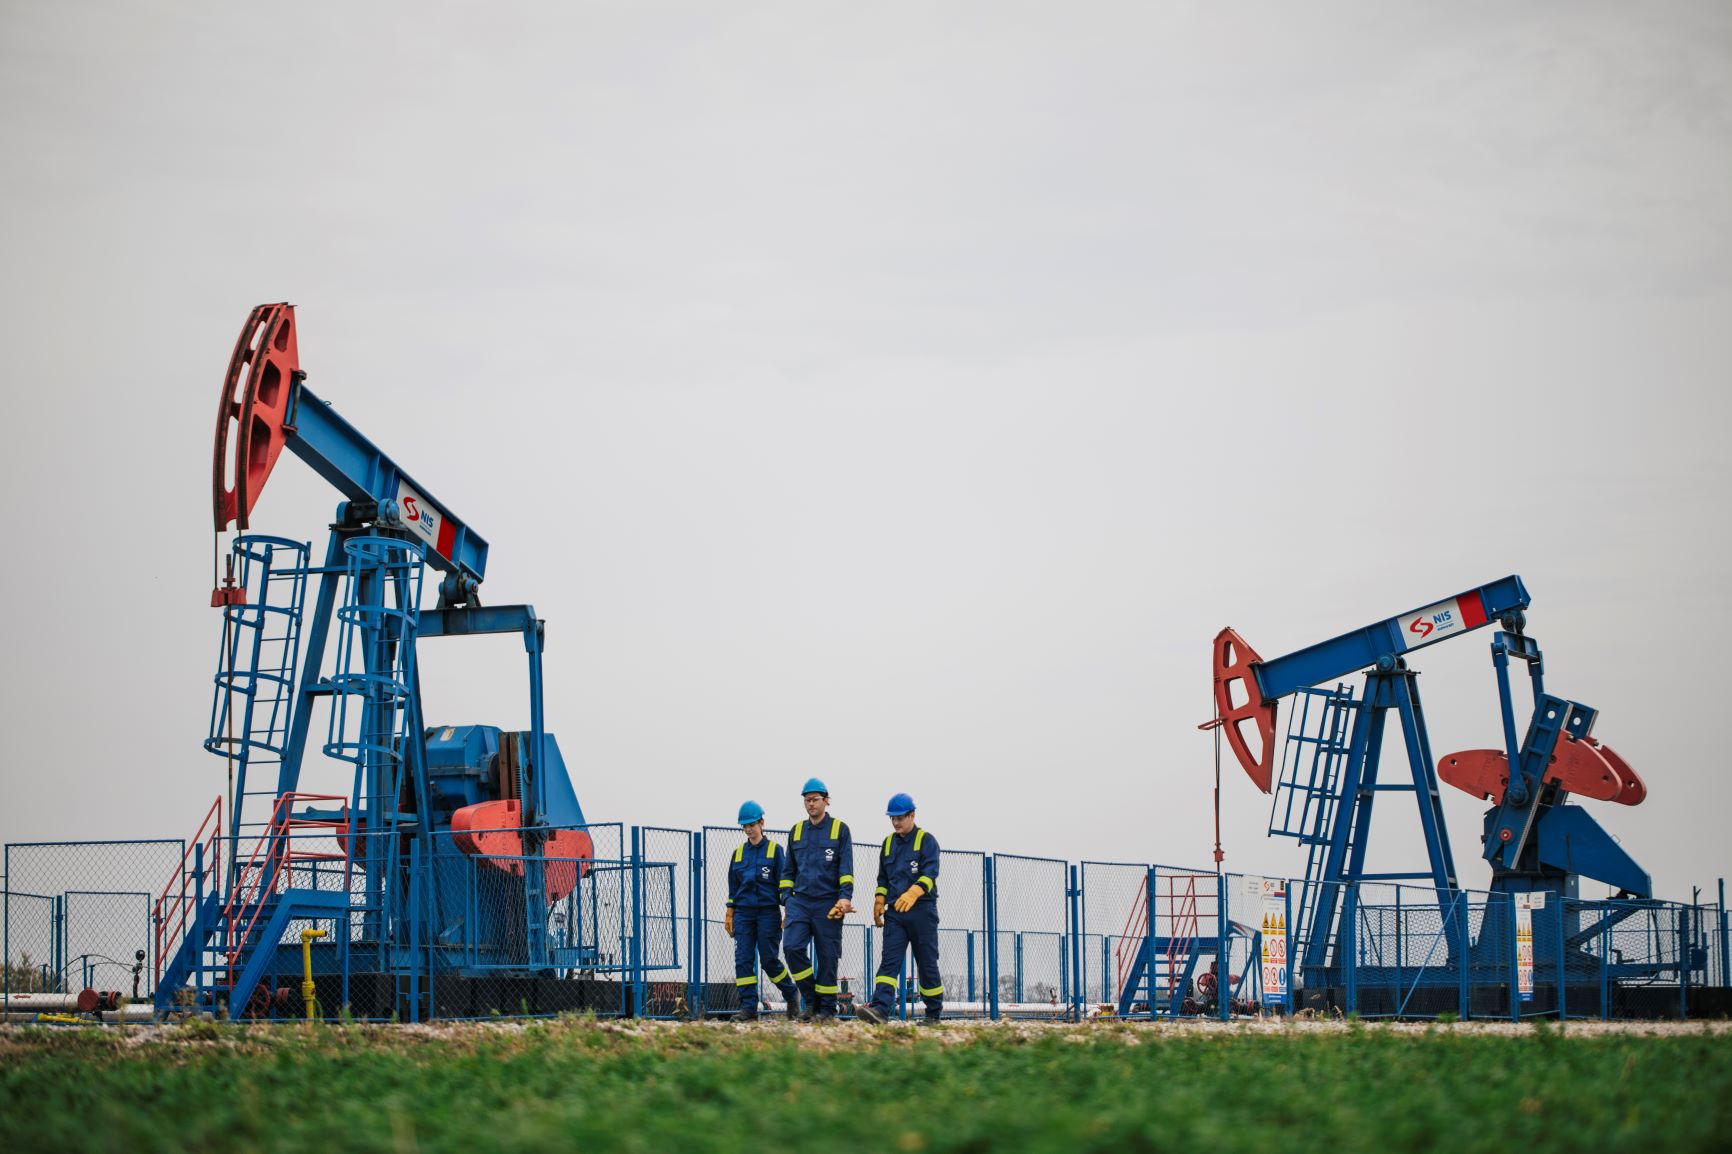 Istraživanje nafte u Srbiji: „Mi realizujemo i različite projekte na polju Velebit i Iđoš i od tih polja u narednim godinama očekujemo da nam donesu stabilnost u proizvodnji nafte i gasa u Srbiji na duži period“, navodi Anton Čerepanov